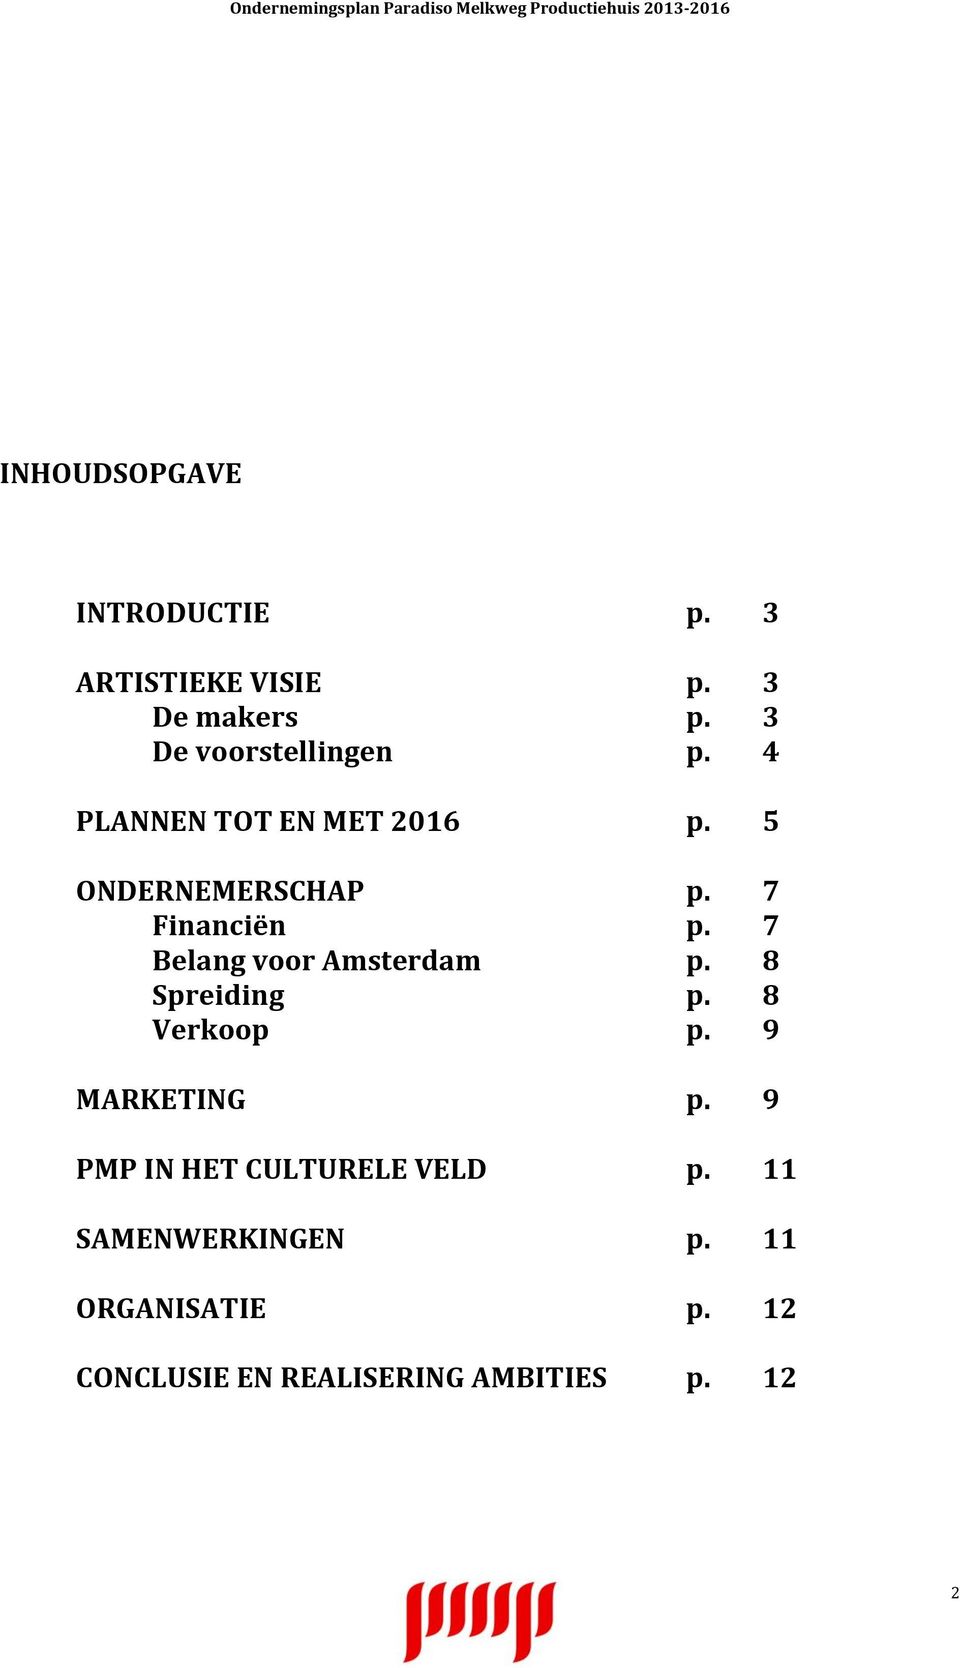 7 Financiën p. 7 Belang voor Amsterdam p. 8 Spreiding p. 8 Verkoop p. 9 MARKETING p.